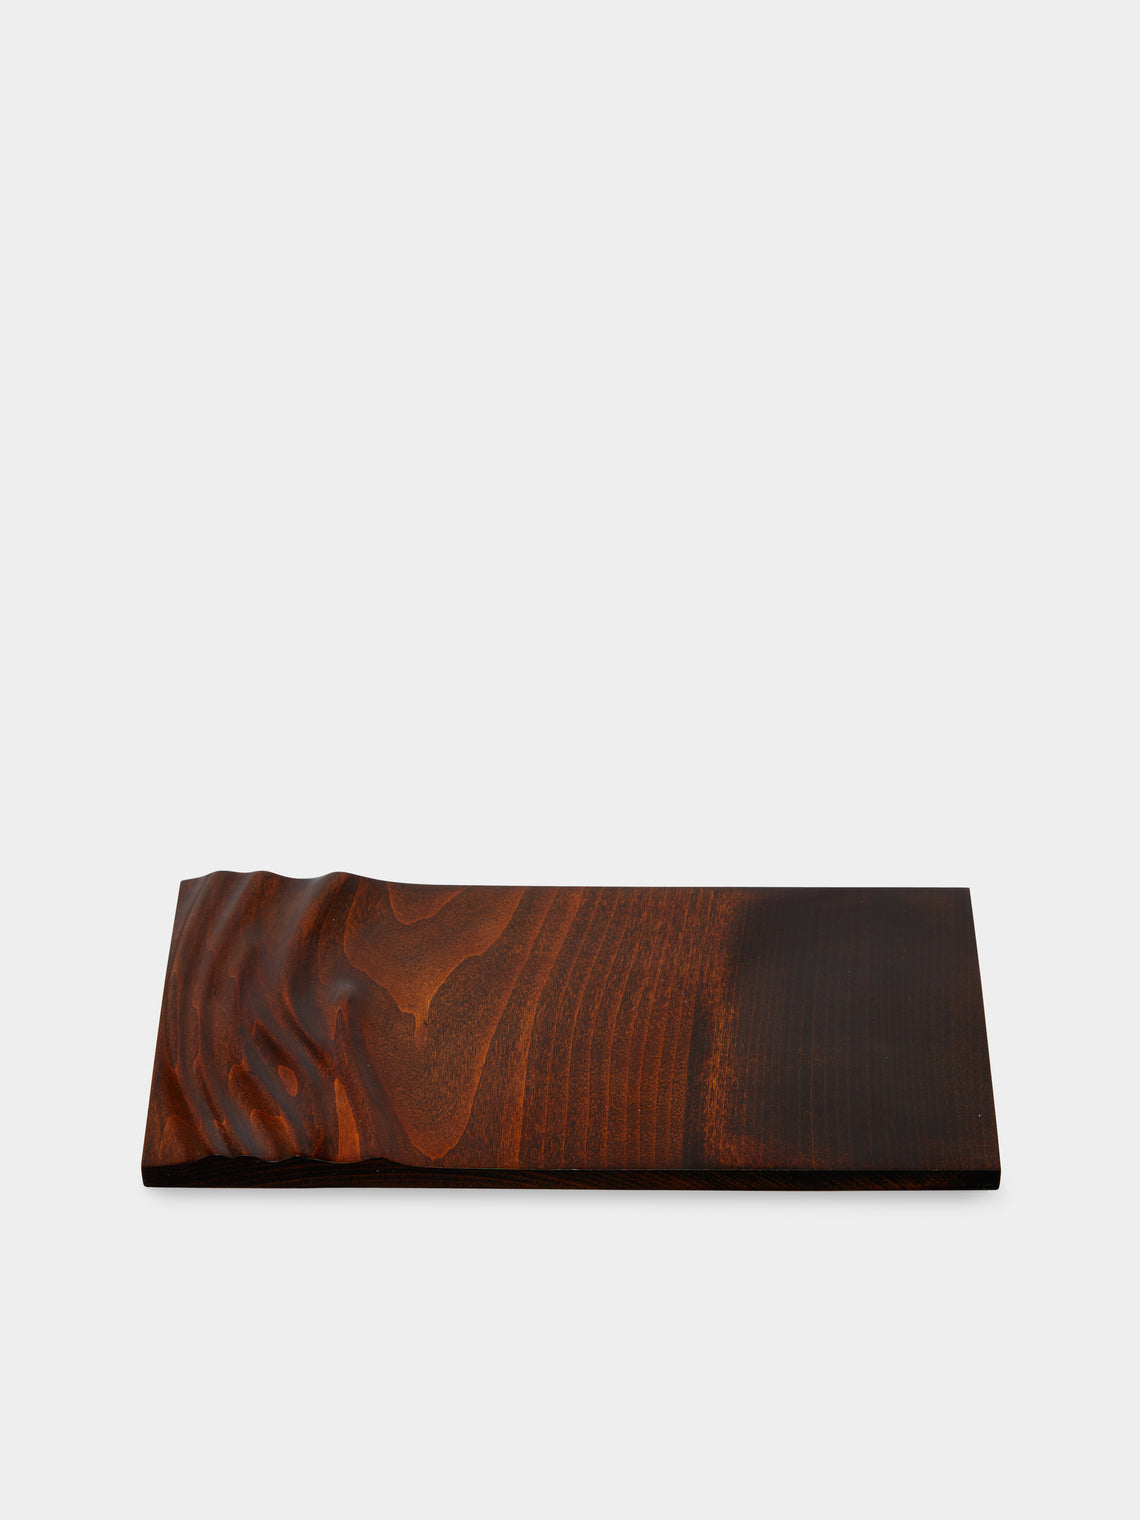 Rabea Gebler - Wave Urushi Wood Plate -  - ABASK - 